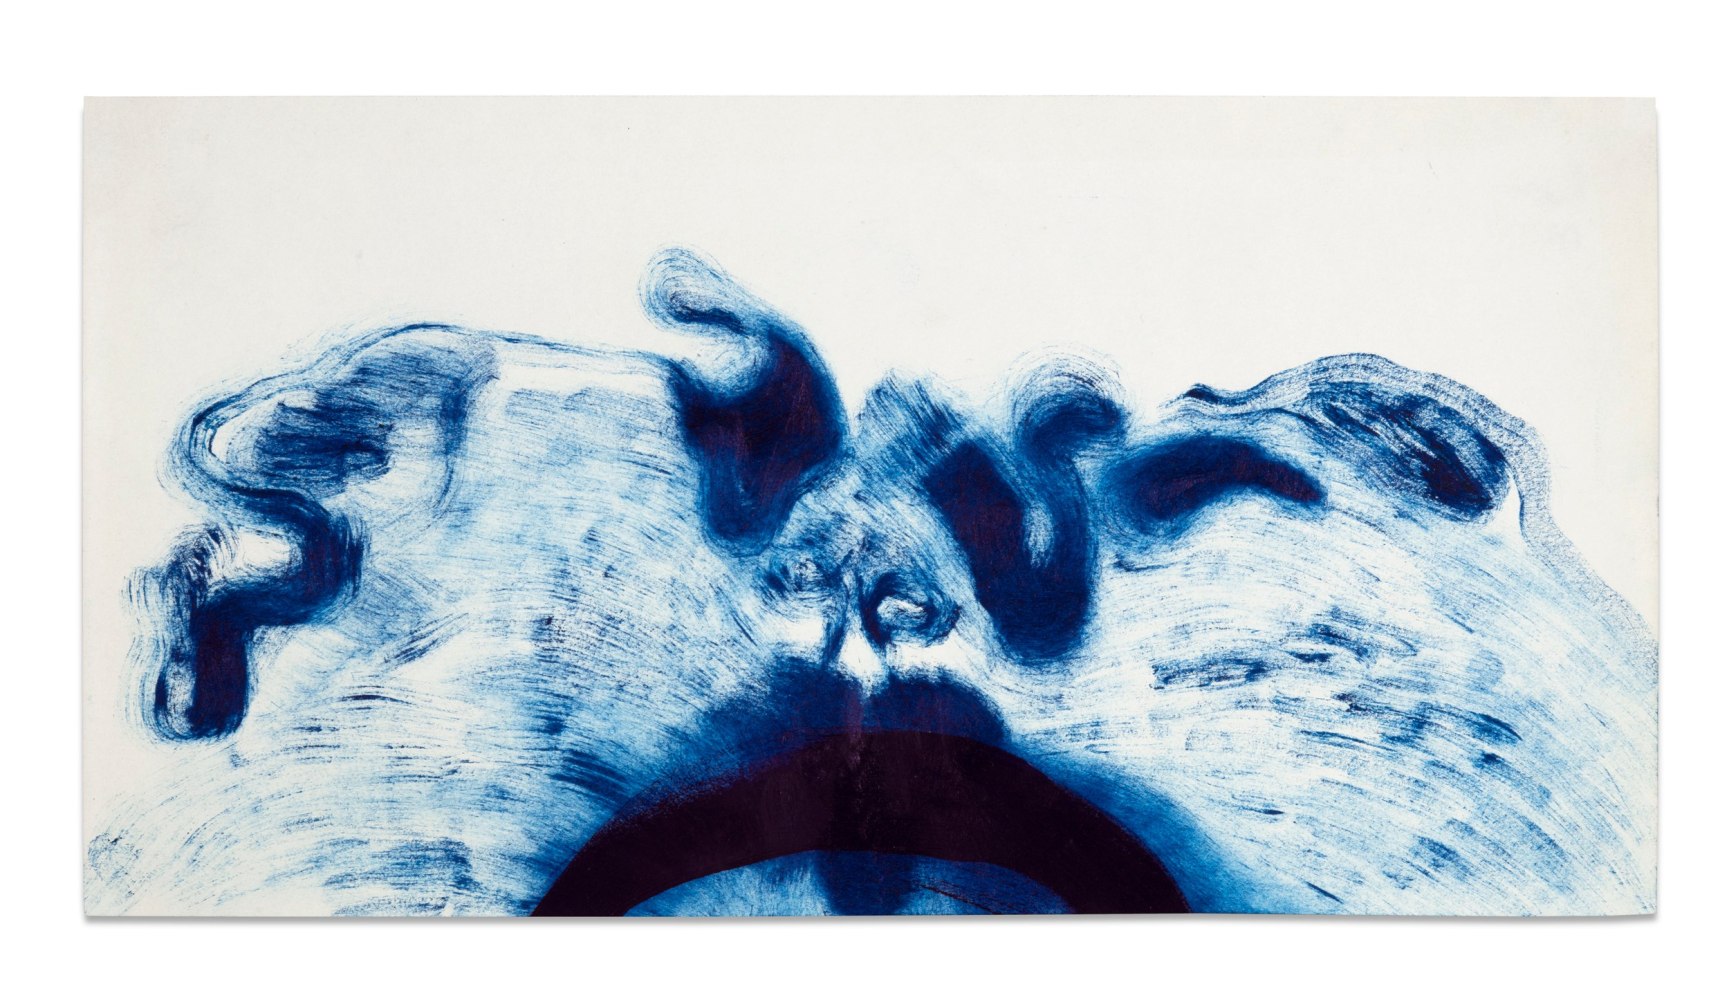 Salmo Suyo

Series: Disforia, 2019

Cyan pigment on paper

15.7 x 29.7 cm
6 1/4 x 11 3/4 in

Unique